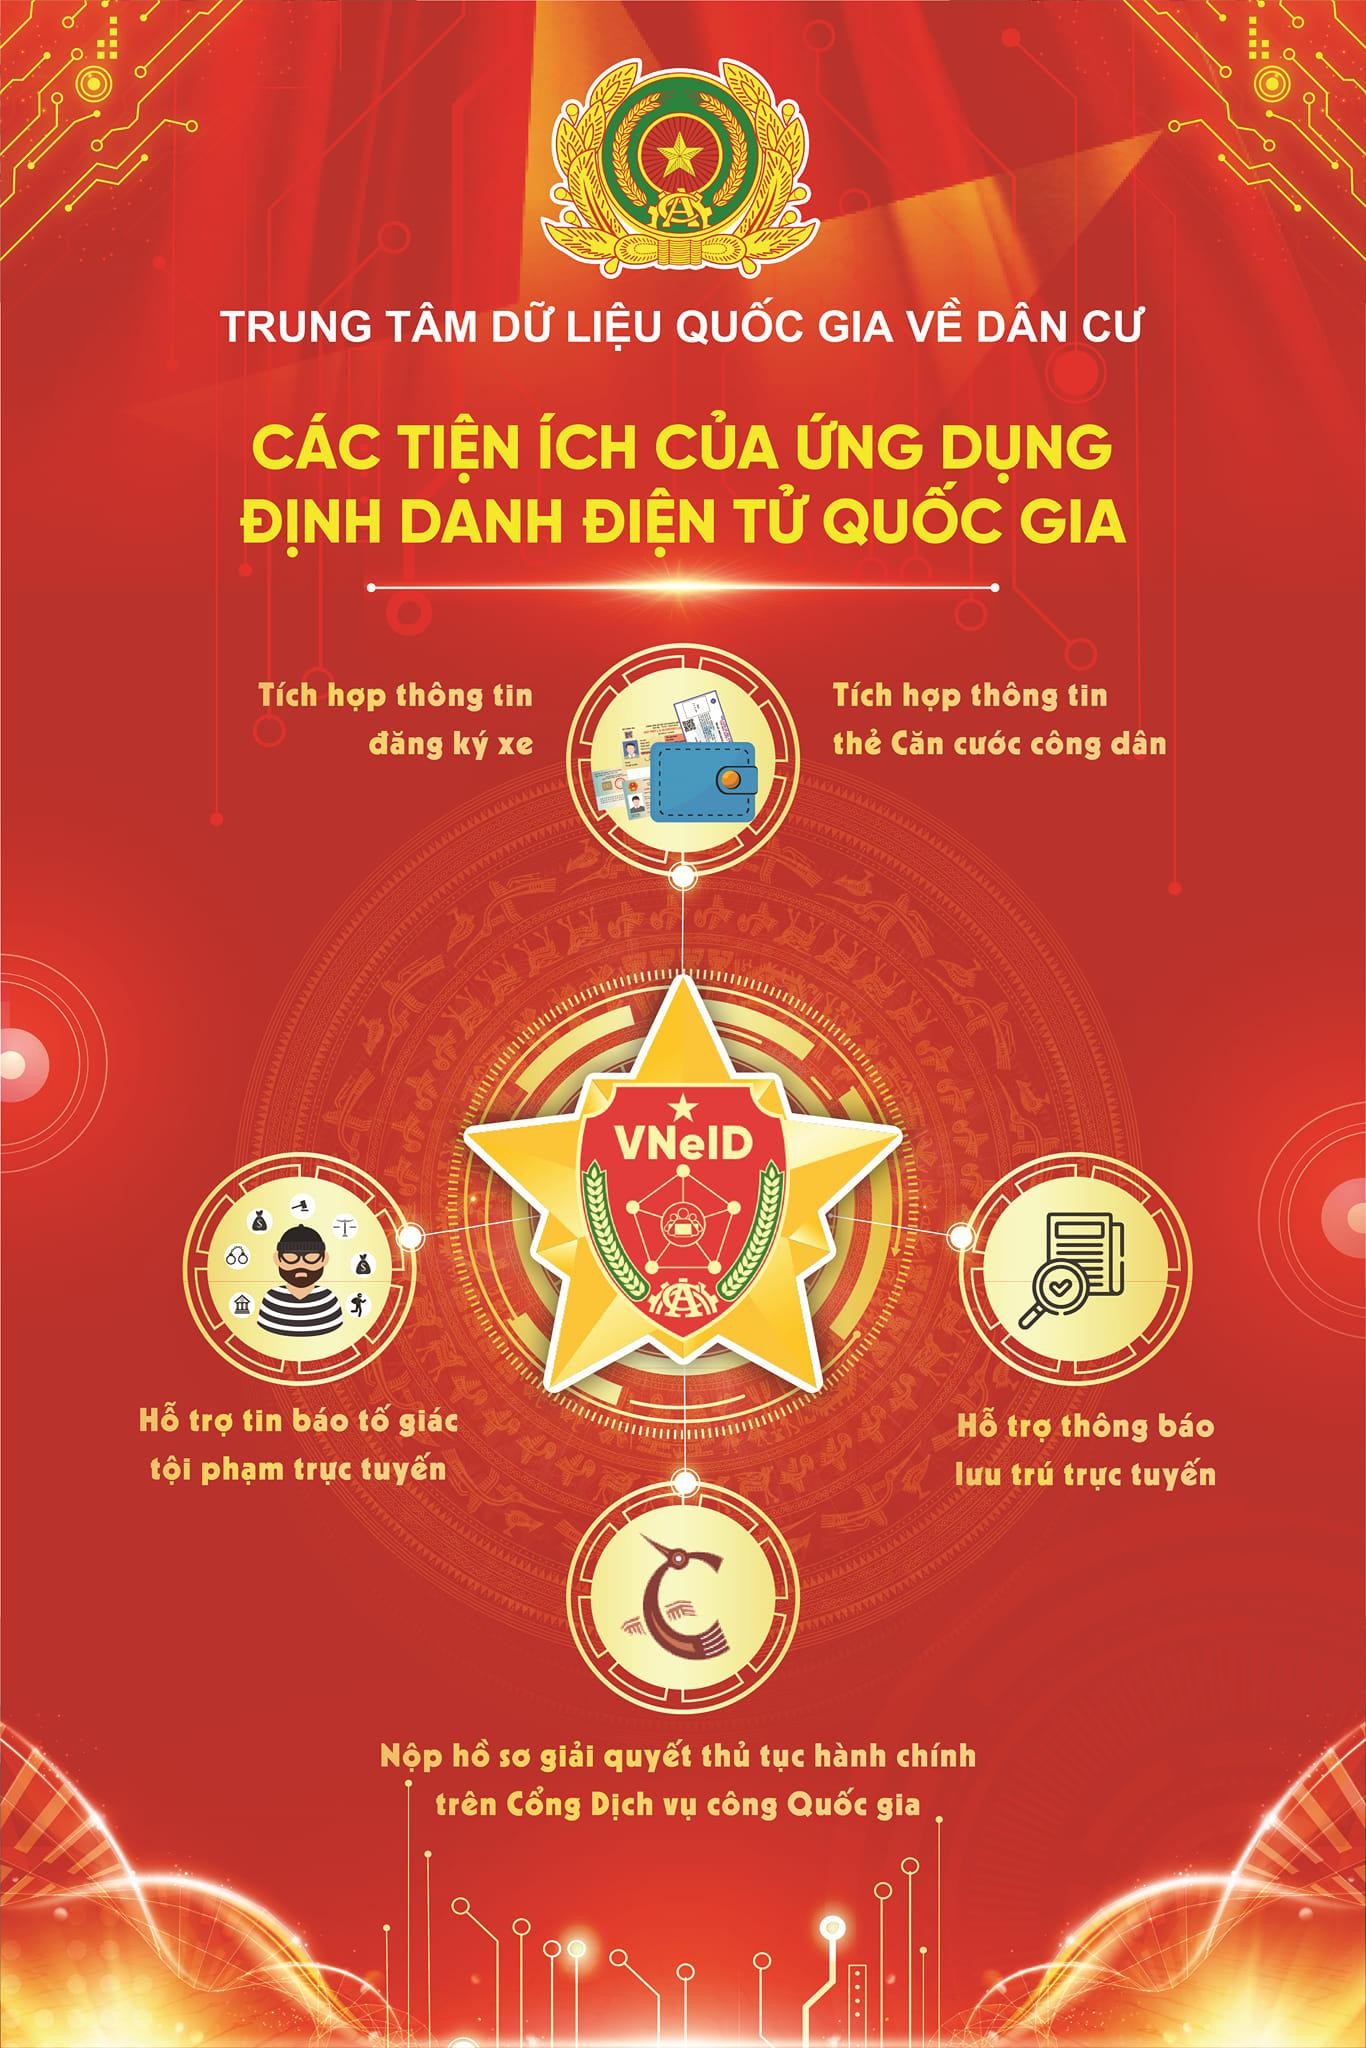 Việt Nam Chính thức trở thành nước có định danh điện tử quốc gia ảnh 2